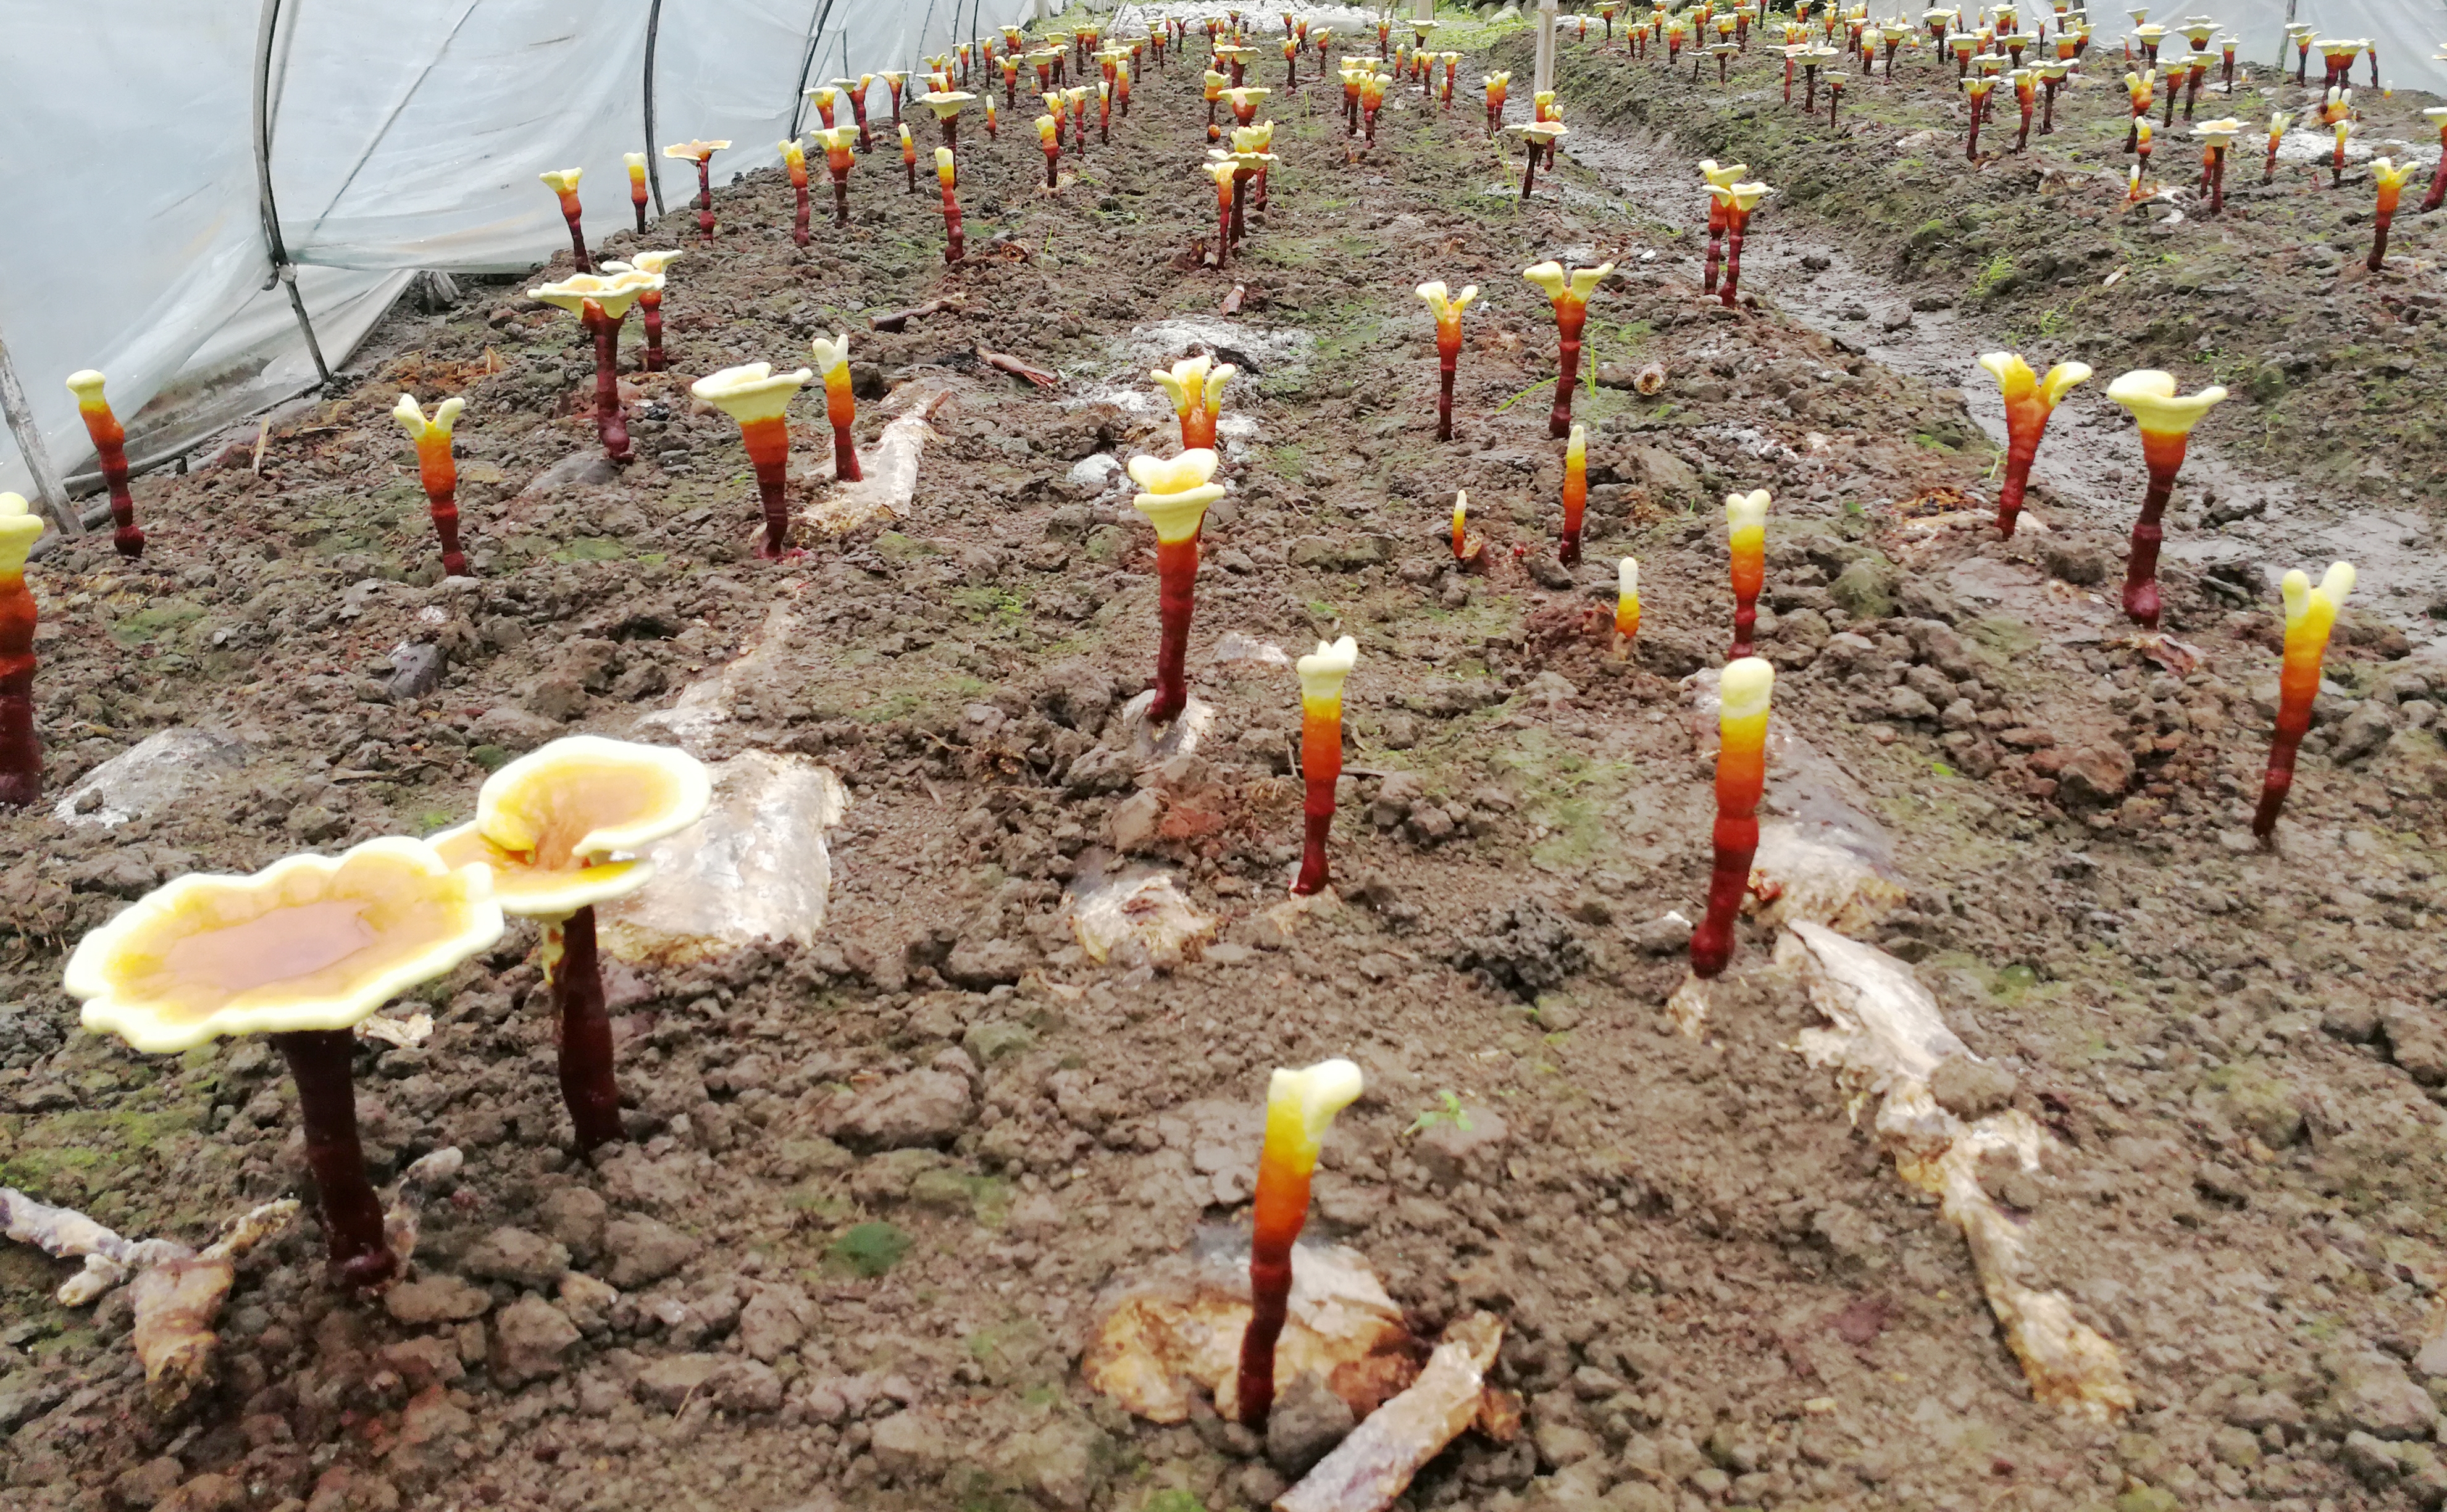 Duanwood Ganoderma Lucidum Cultivation Site